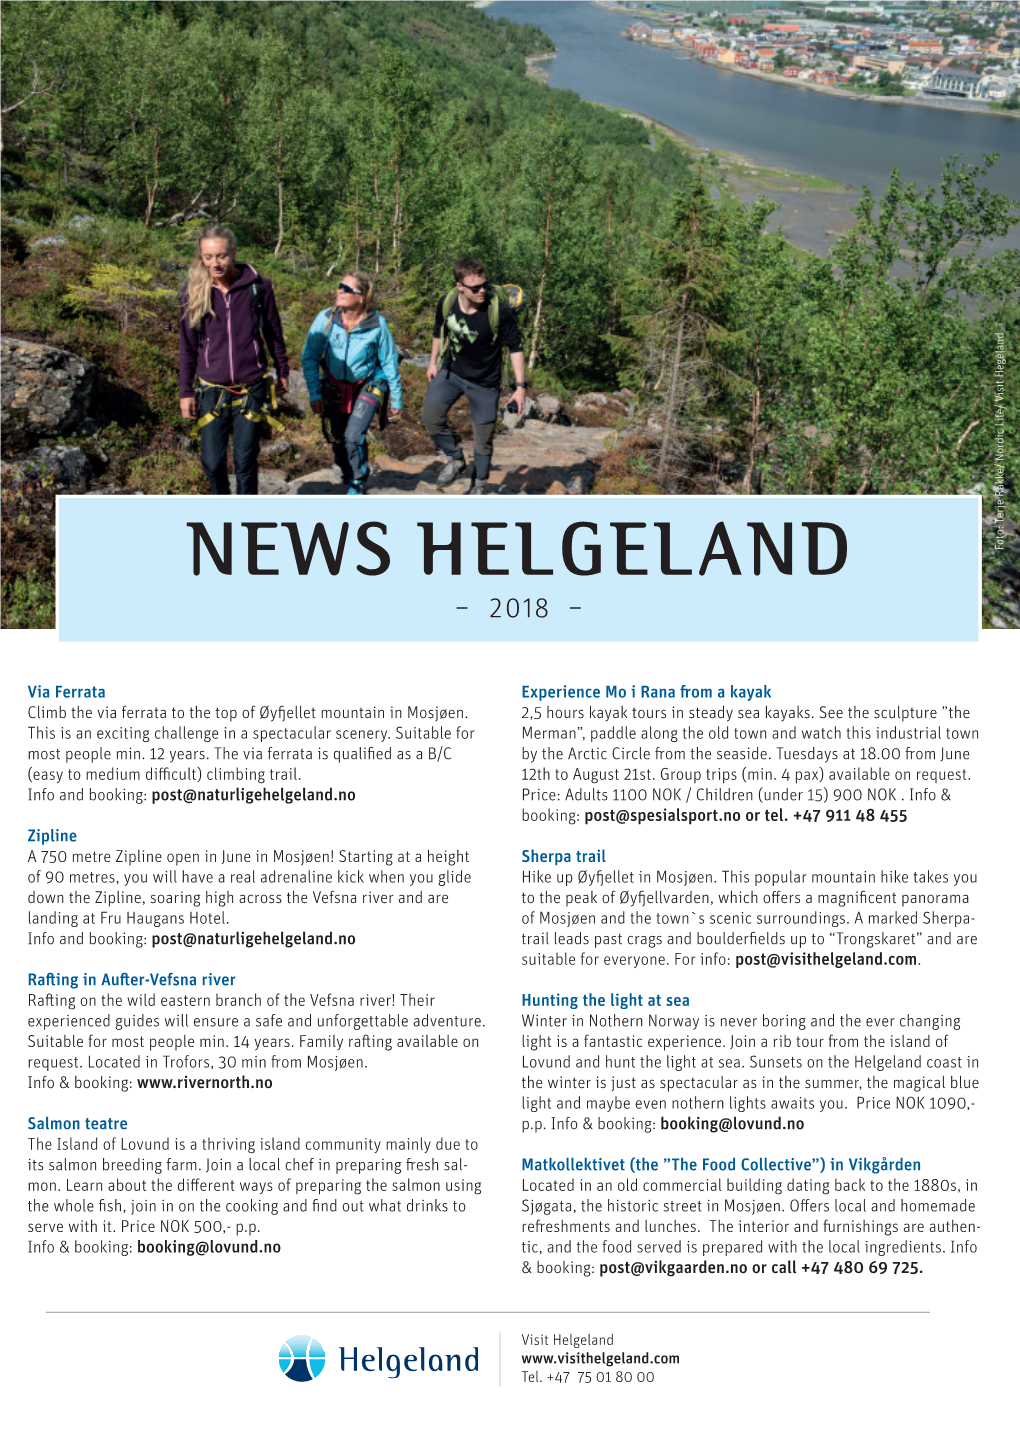 NEWS HELGELAND Hegeland Visit Nordic Life/ Rakke/ Terje Foto: – 2018 –